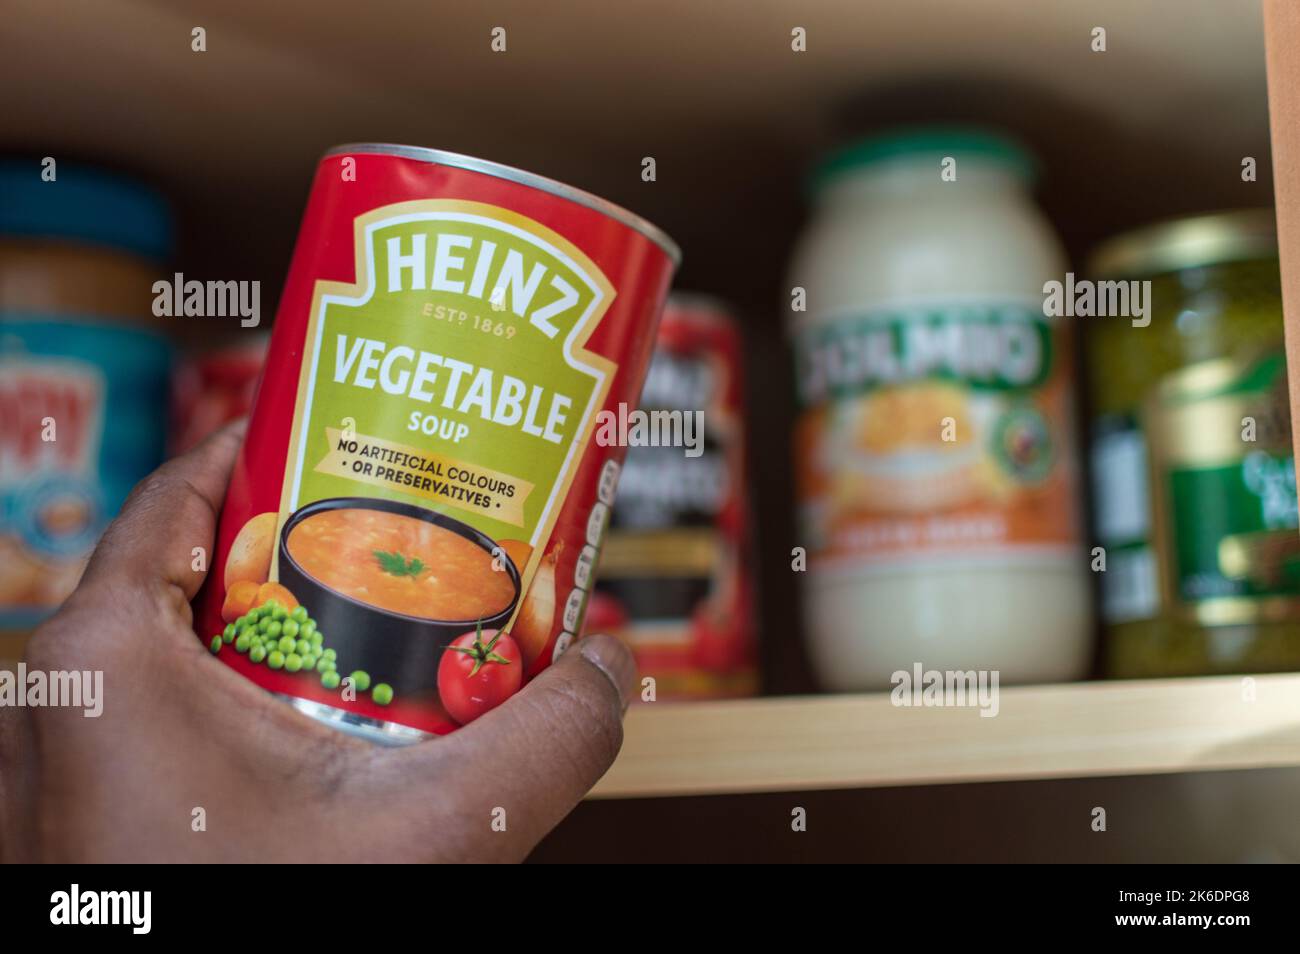 Maschio adulto che prende una lattina di minestra di verdure di Heinz dall'armadietto Foto Stock